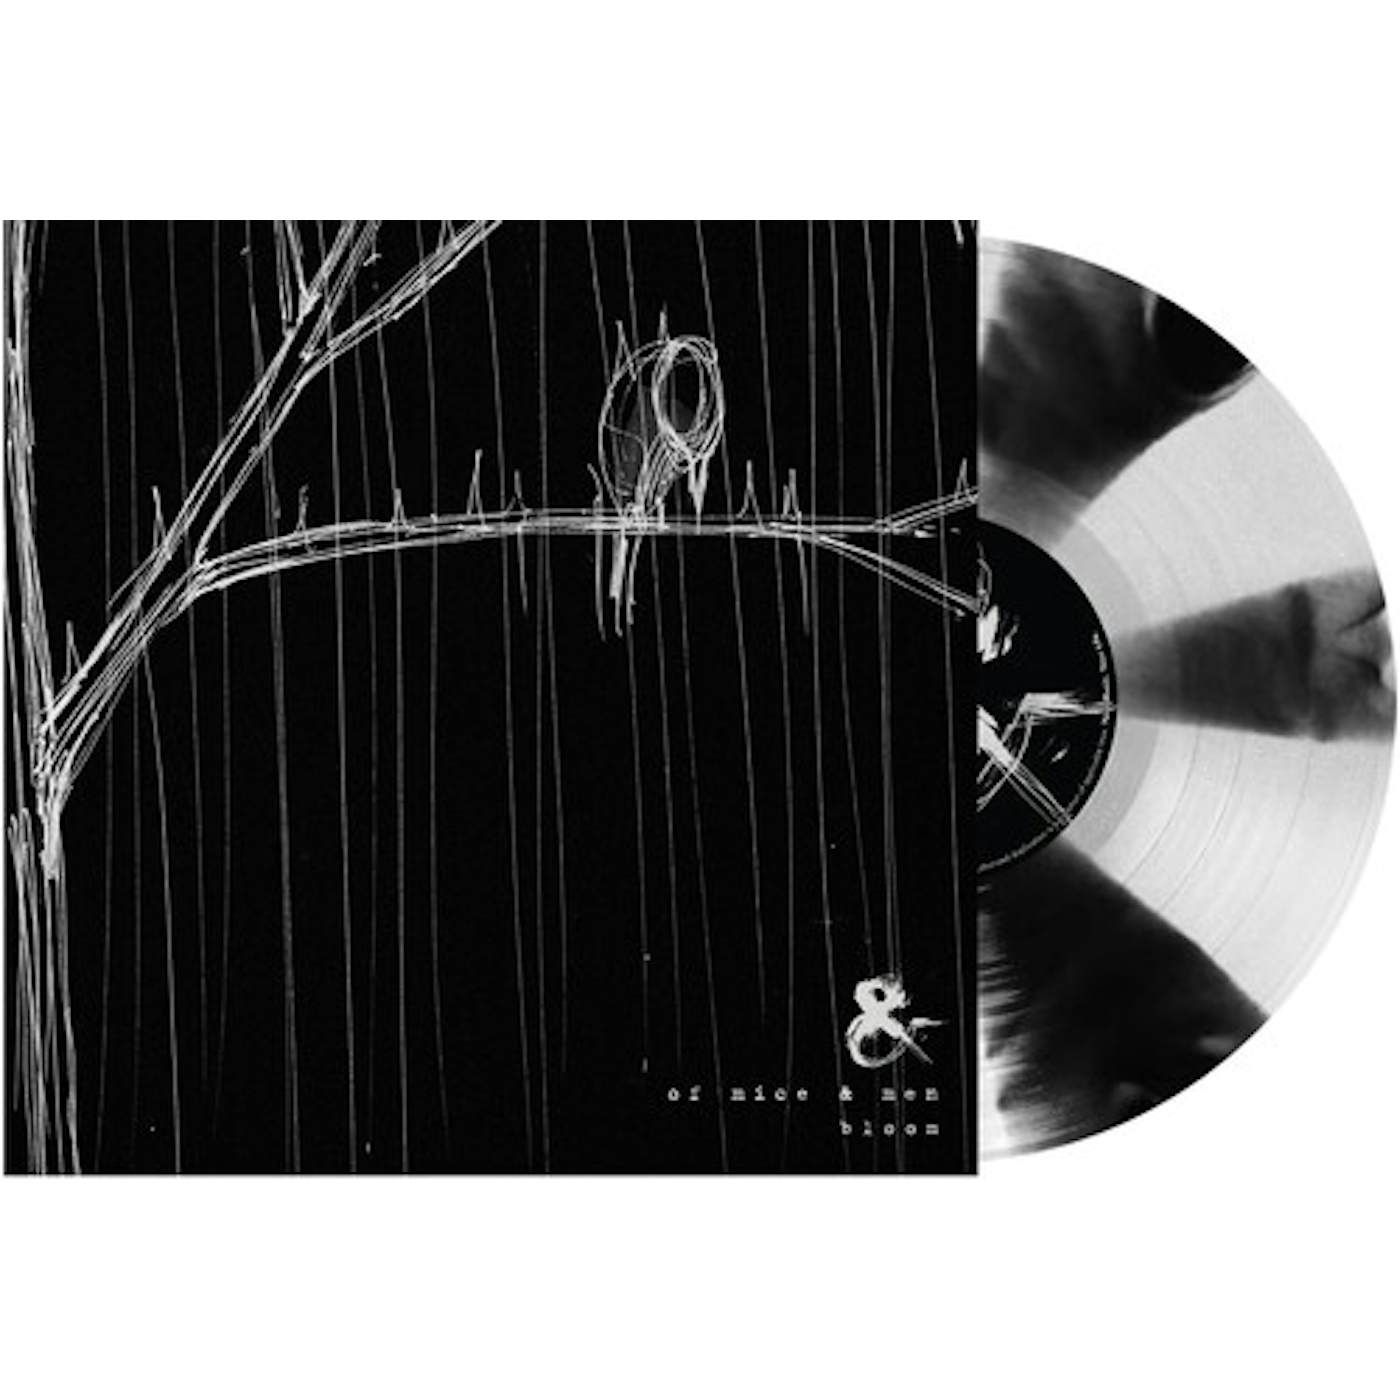 Of Mice & Men Bloom - Black & White Pinwheel Vinyl Record